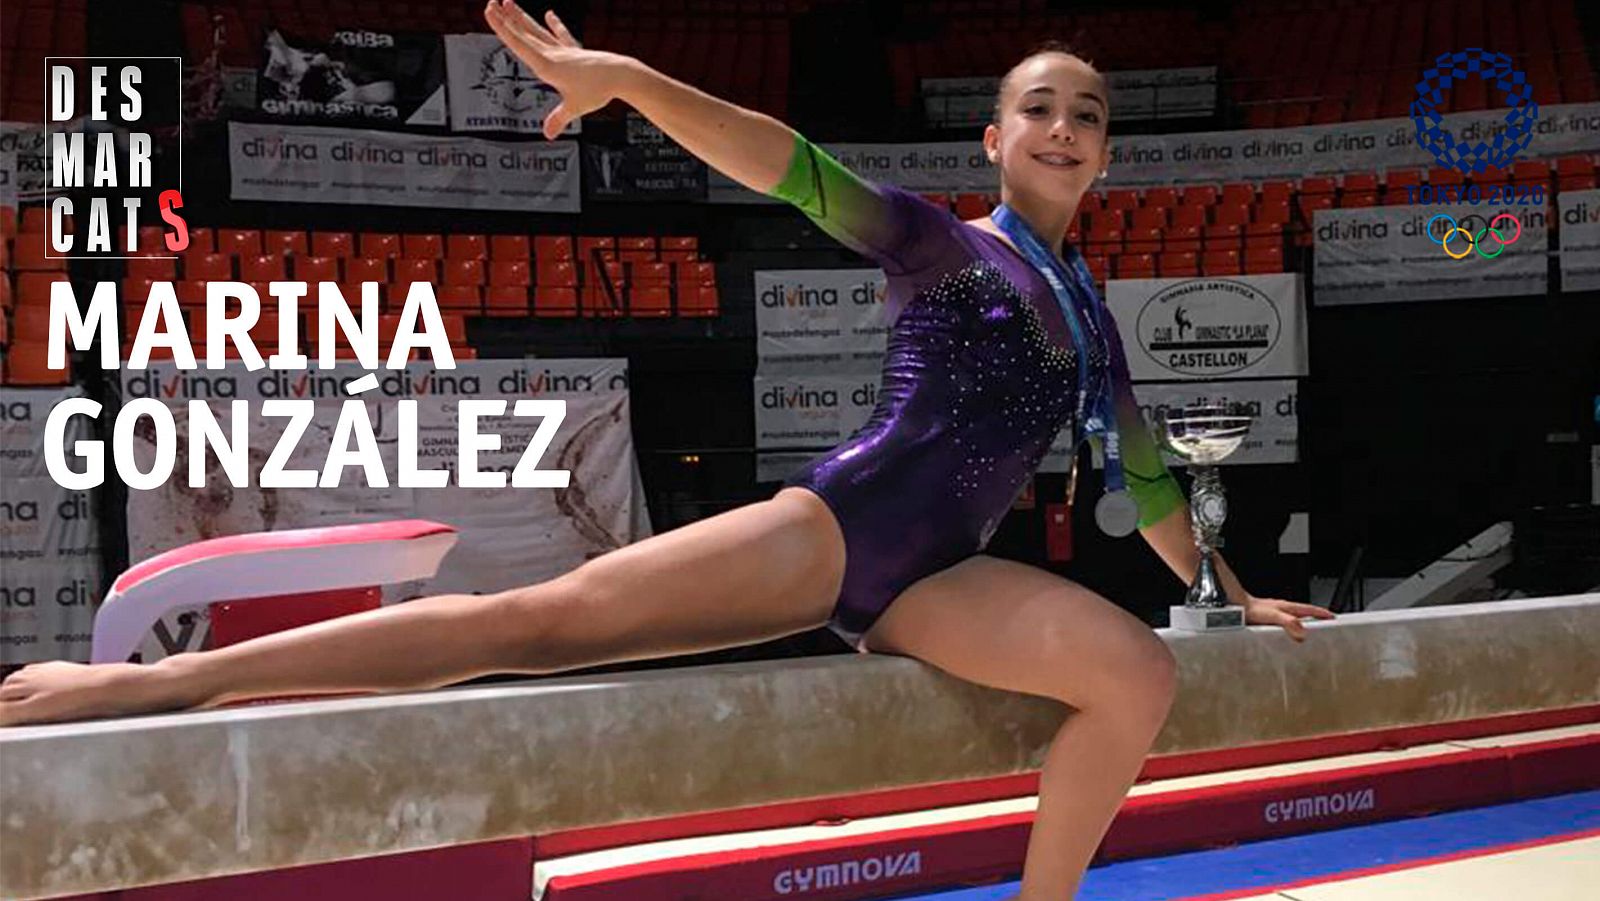 Desmarcats |  Marina González, gimnasta - RTVE Catalunya